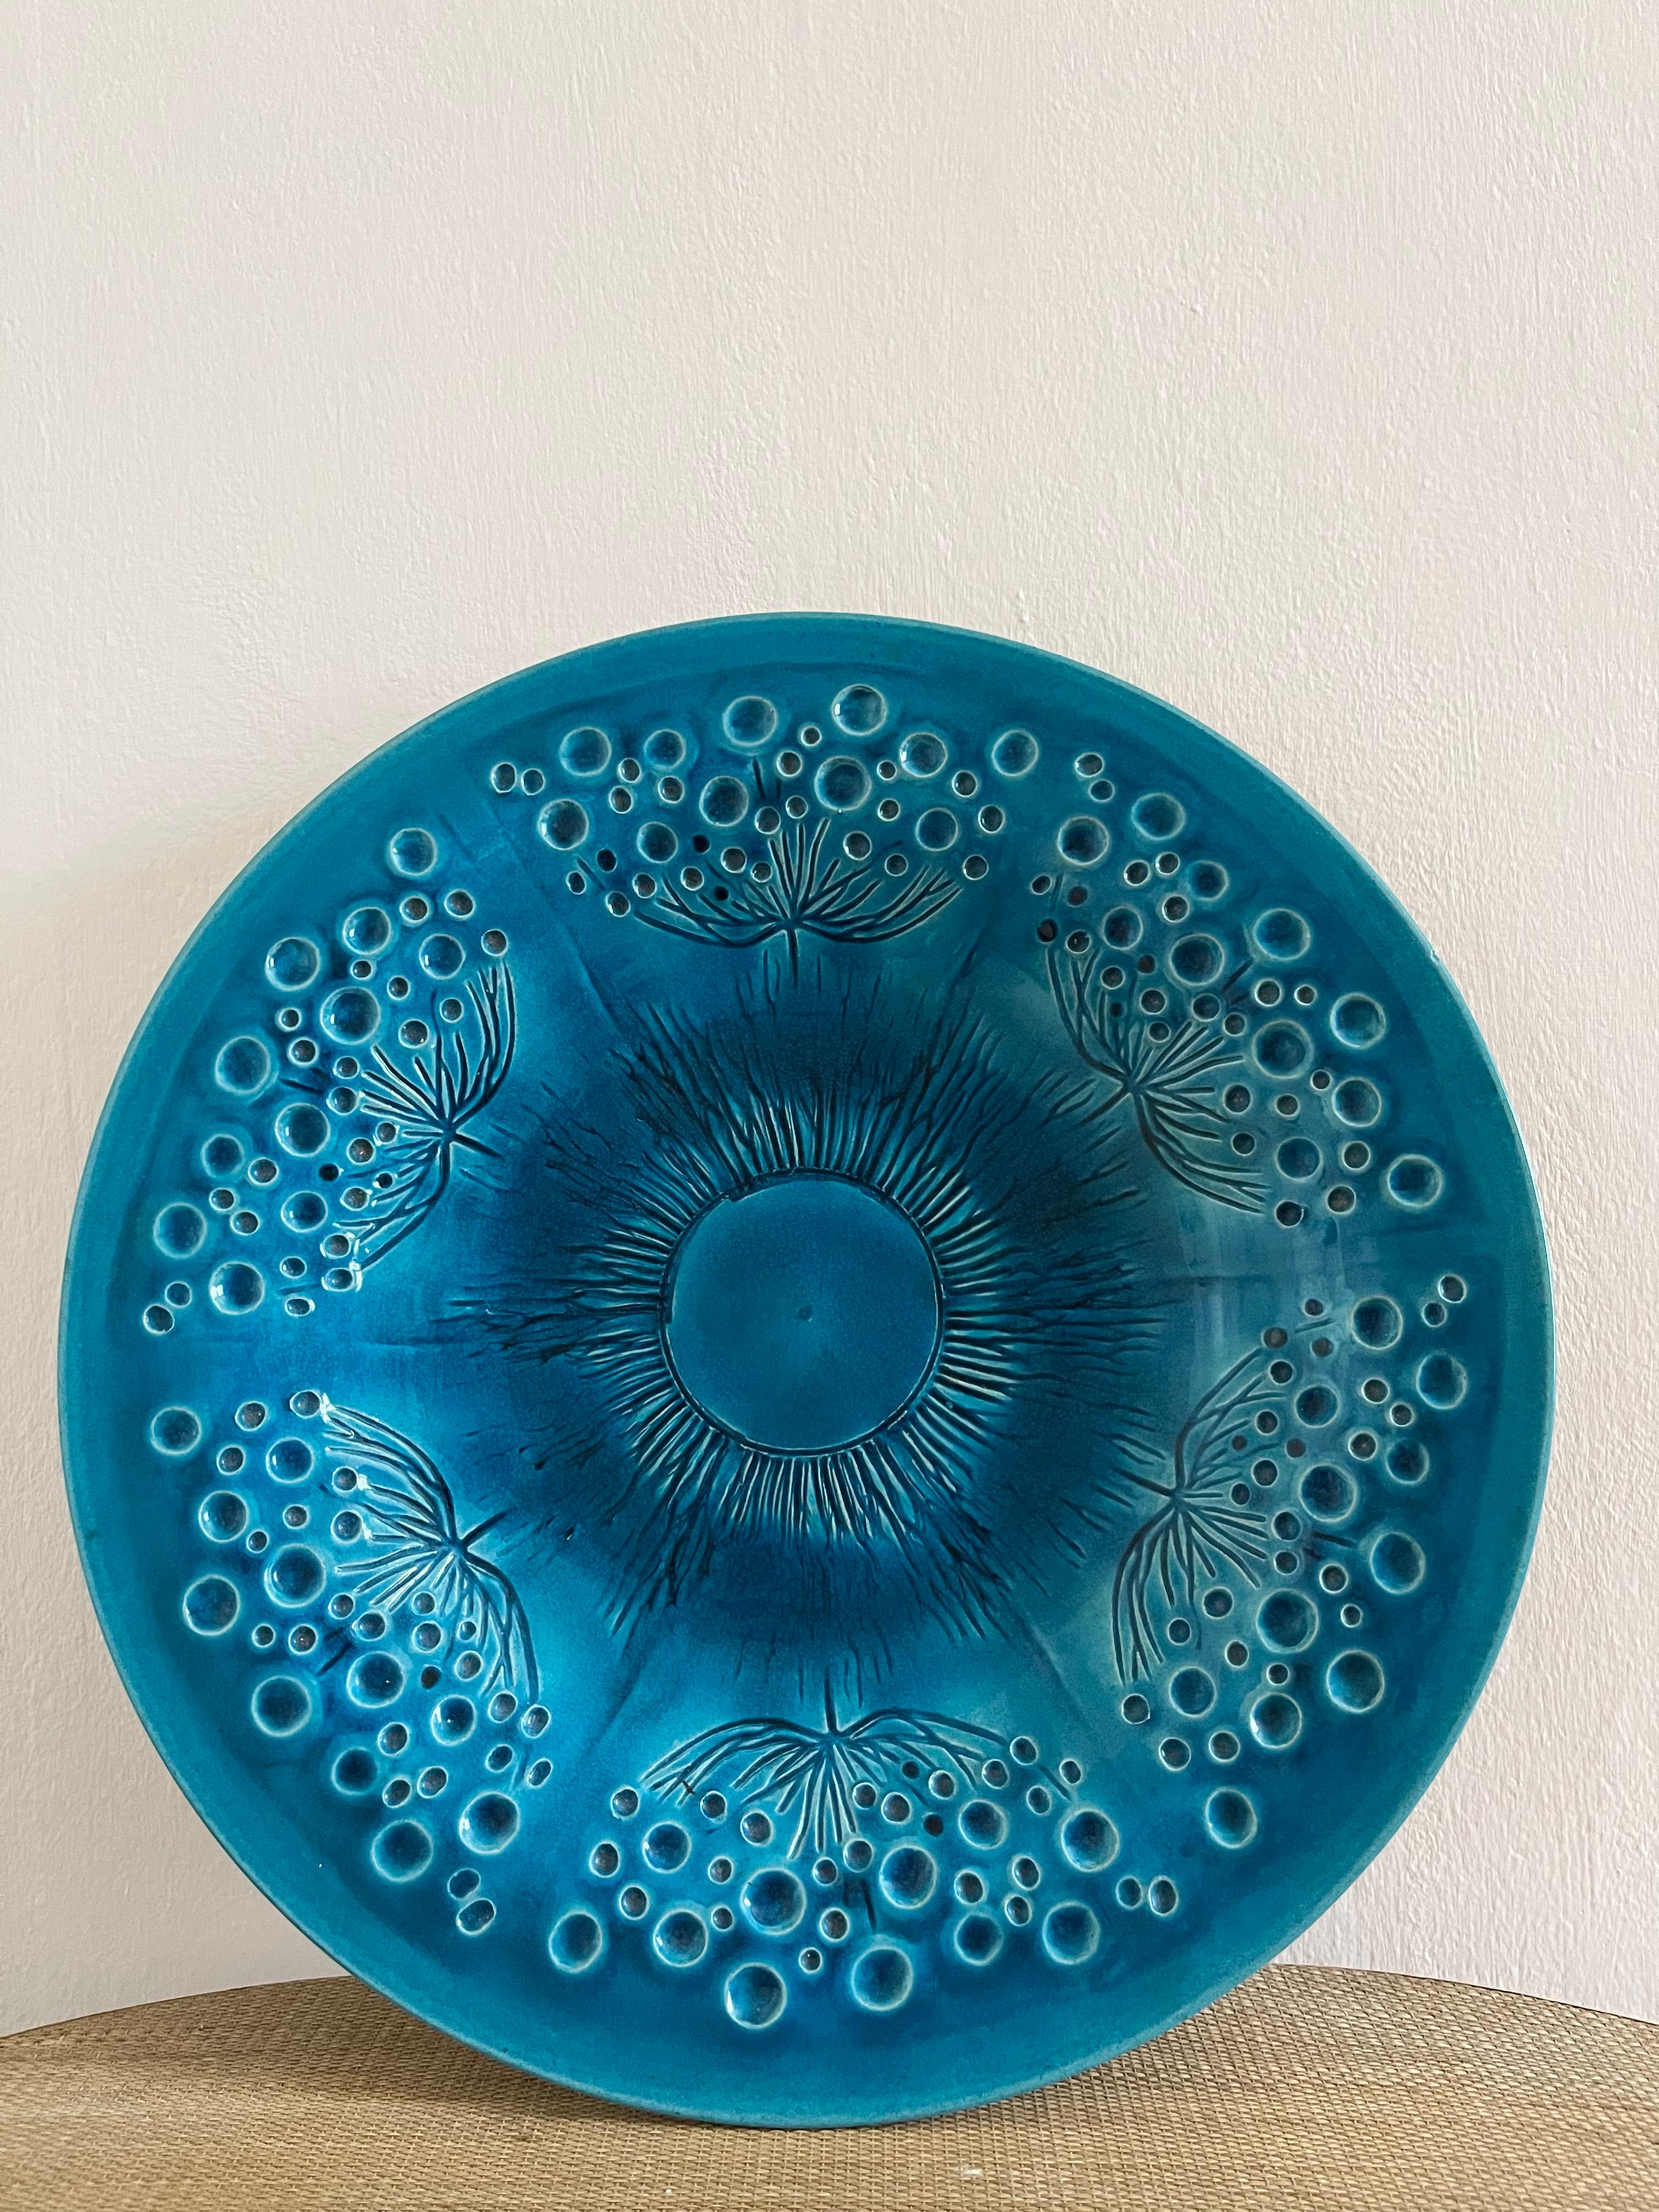 Grand plat en céramique des années 1960/70 de Kähler avec glaçure turquoise brillante. Très décoratif, il est parfait comme élément de décoration sur n'importe quelle table.

Parfait état, aucun défaut.

Diamètre : 41 cm (16.1 in) // Hauteur : 6 cm